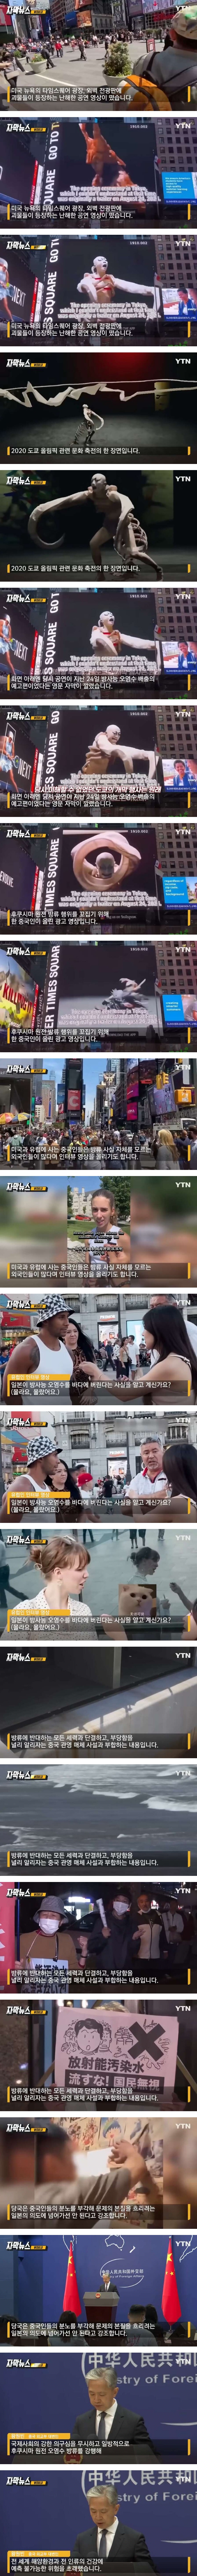 중국인이 미국 타임 스퀘어에 올린 영상 - 5